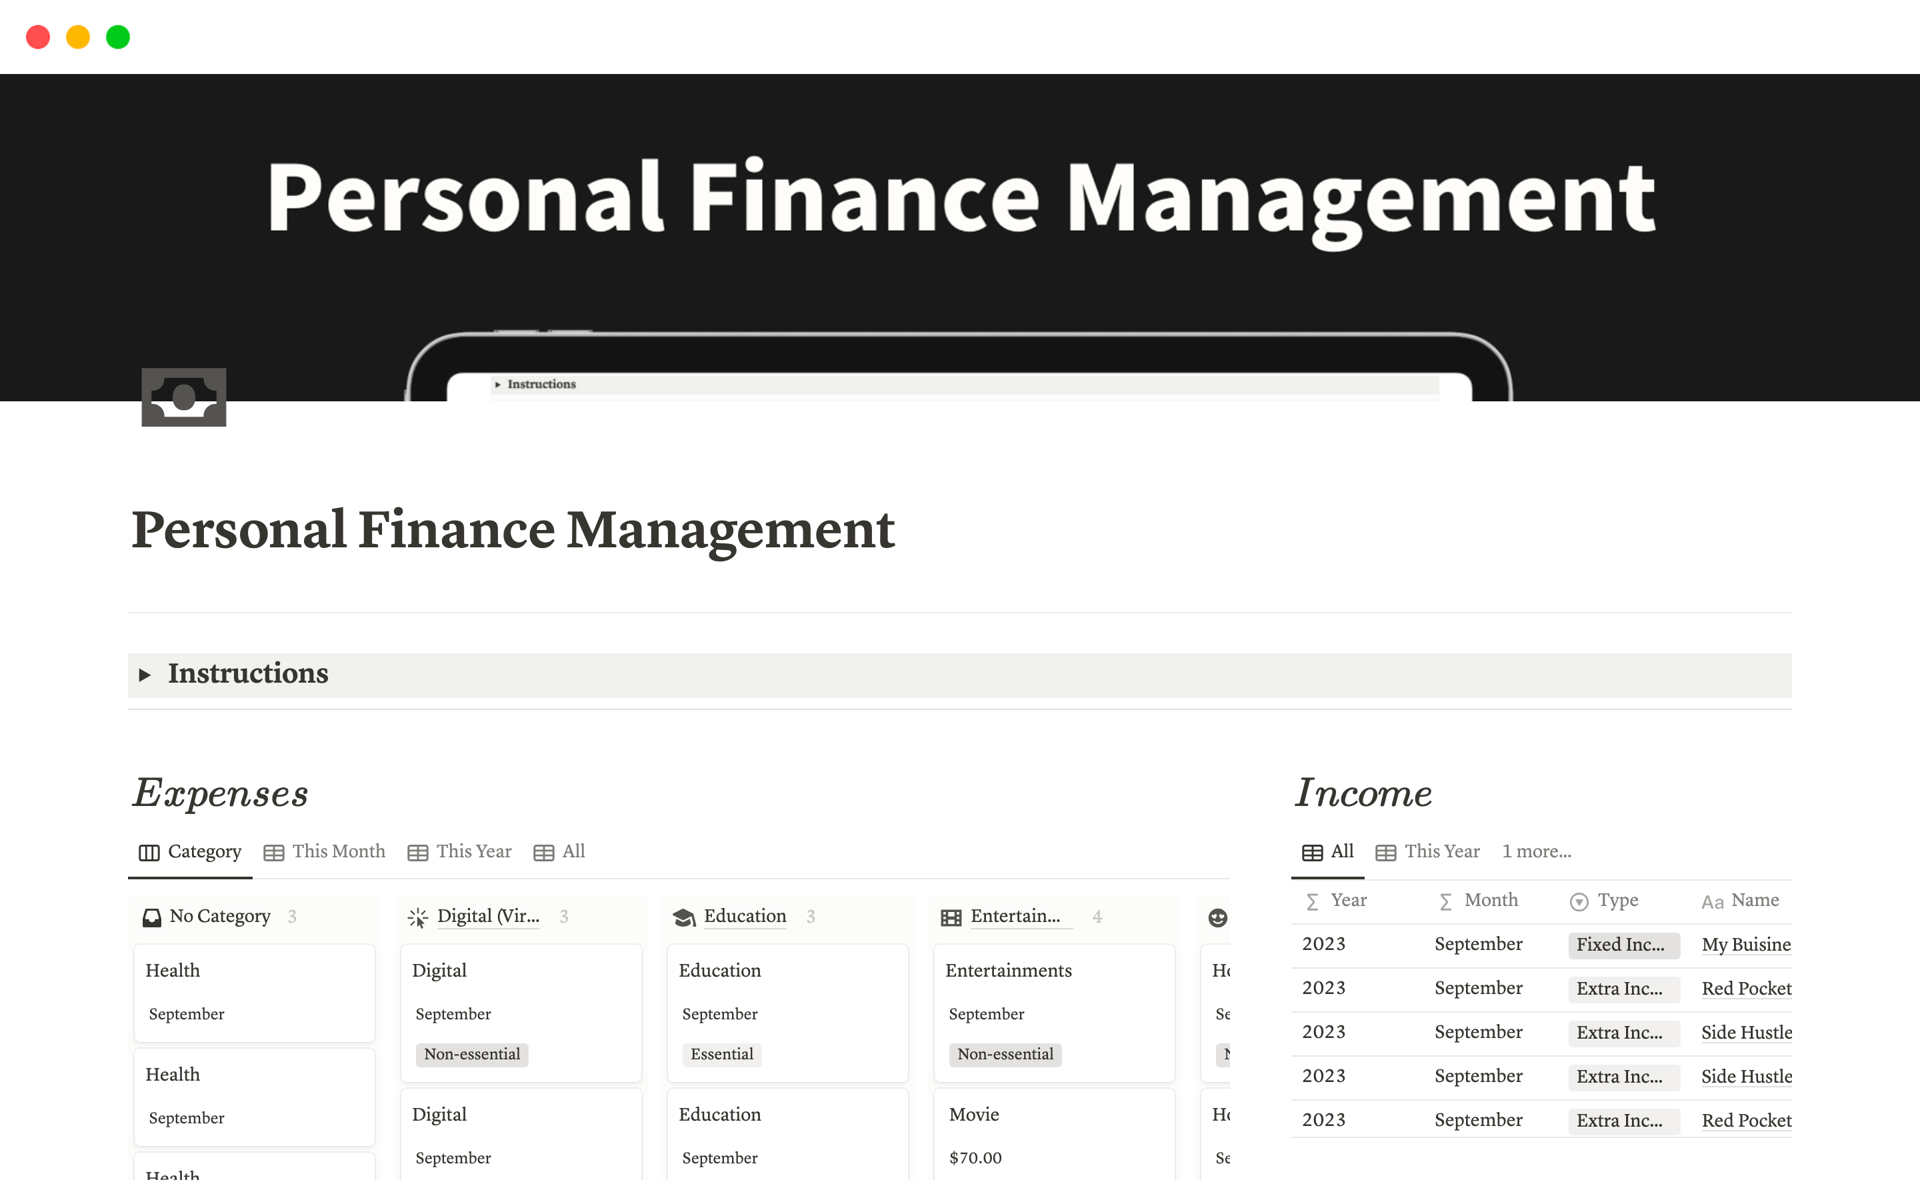 Uma prévia do modelo para Personal Finance Management